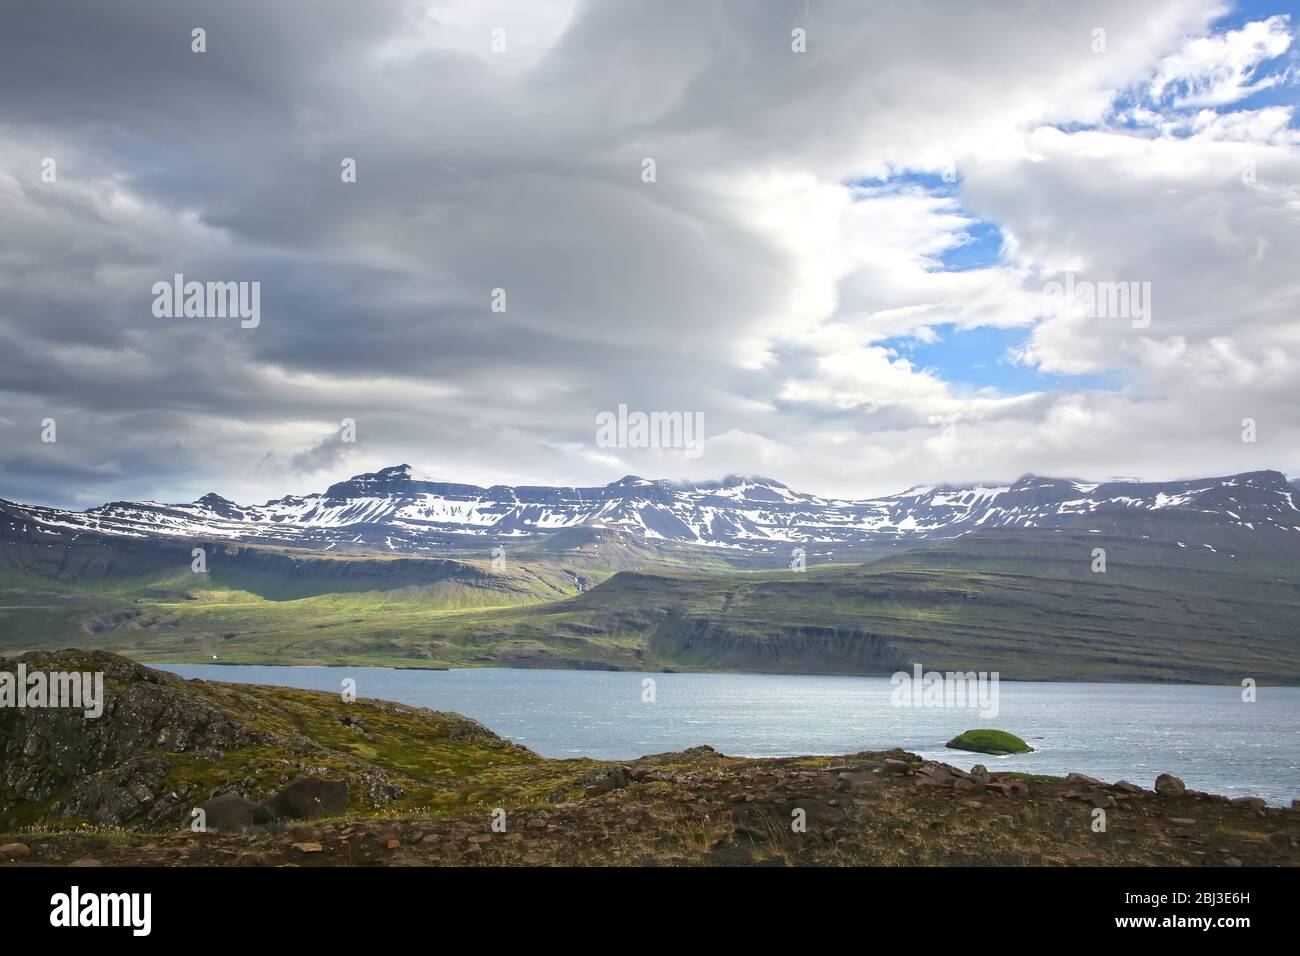 La péninsule de Holmanes et la réserve naturelle abritent une nature et un paysage variés et magnifiques. Eskifjordur, Islande de l'est. Banque D'Images